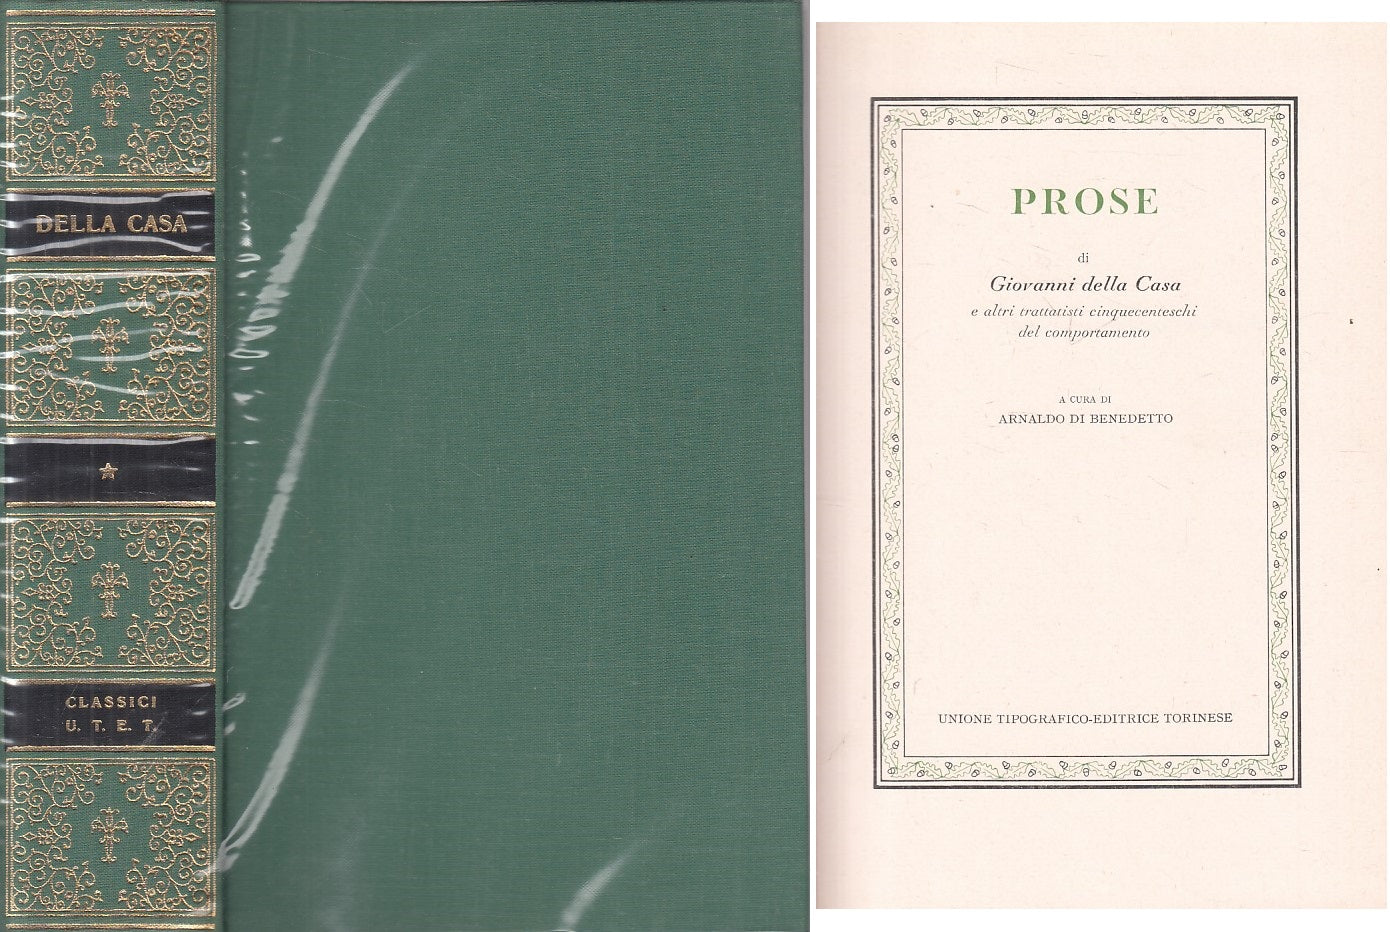 LN- PROSE - GIOVANNI DELLA CASA - UTET - CLASSICI ITALIANI -- 1974 - CS - ZFS97